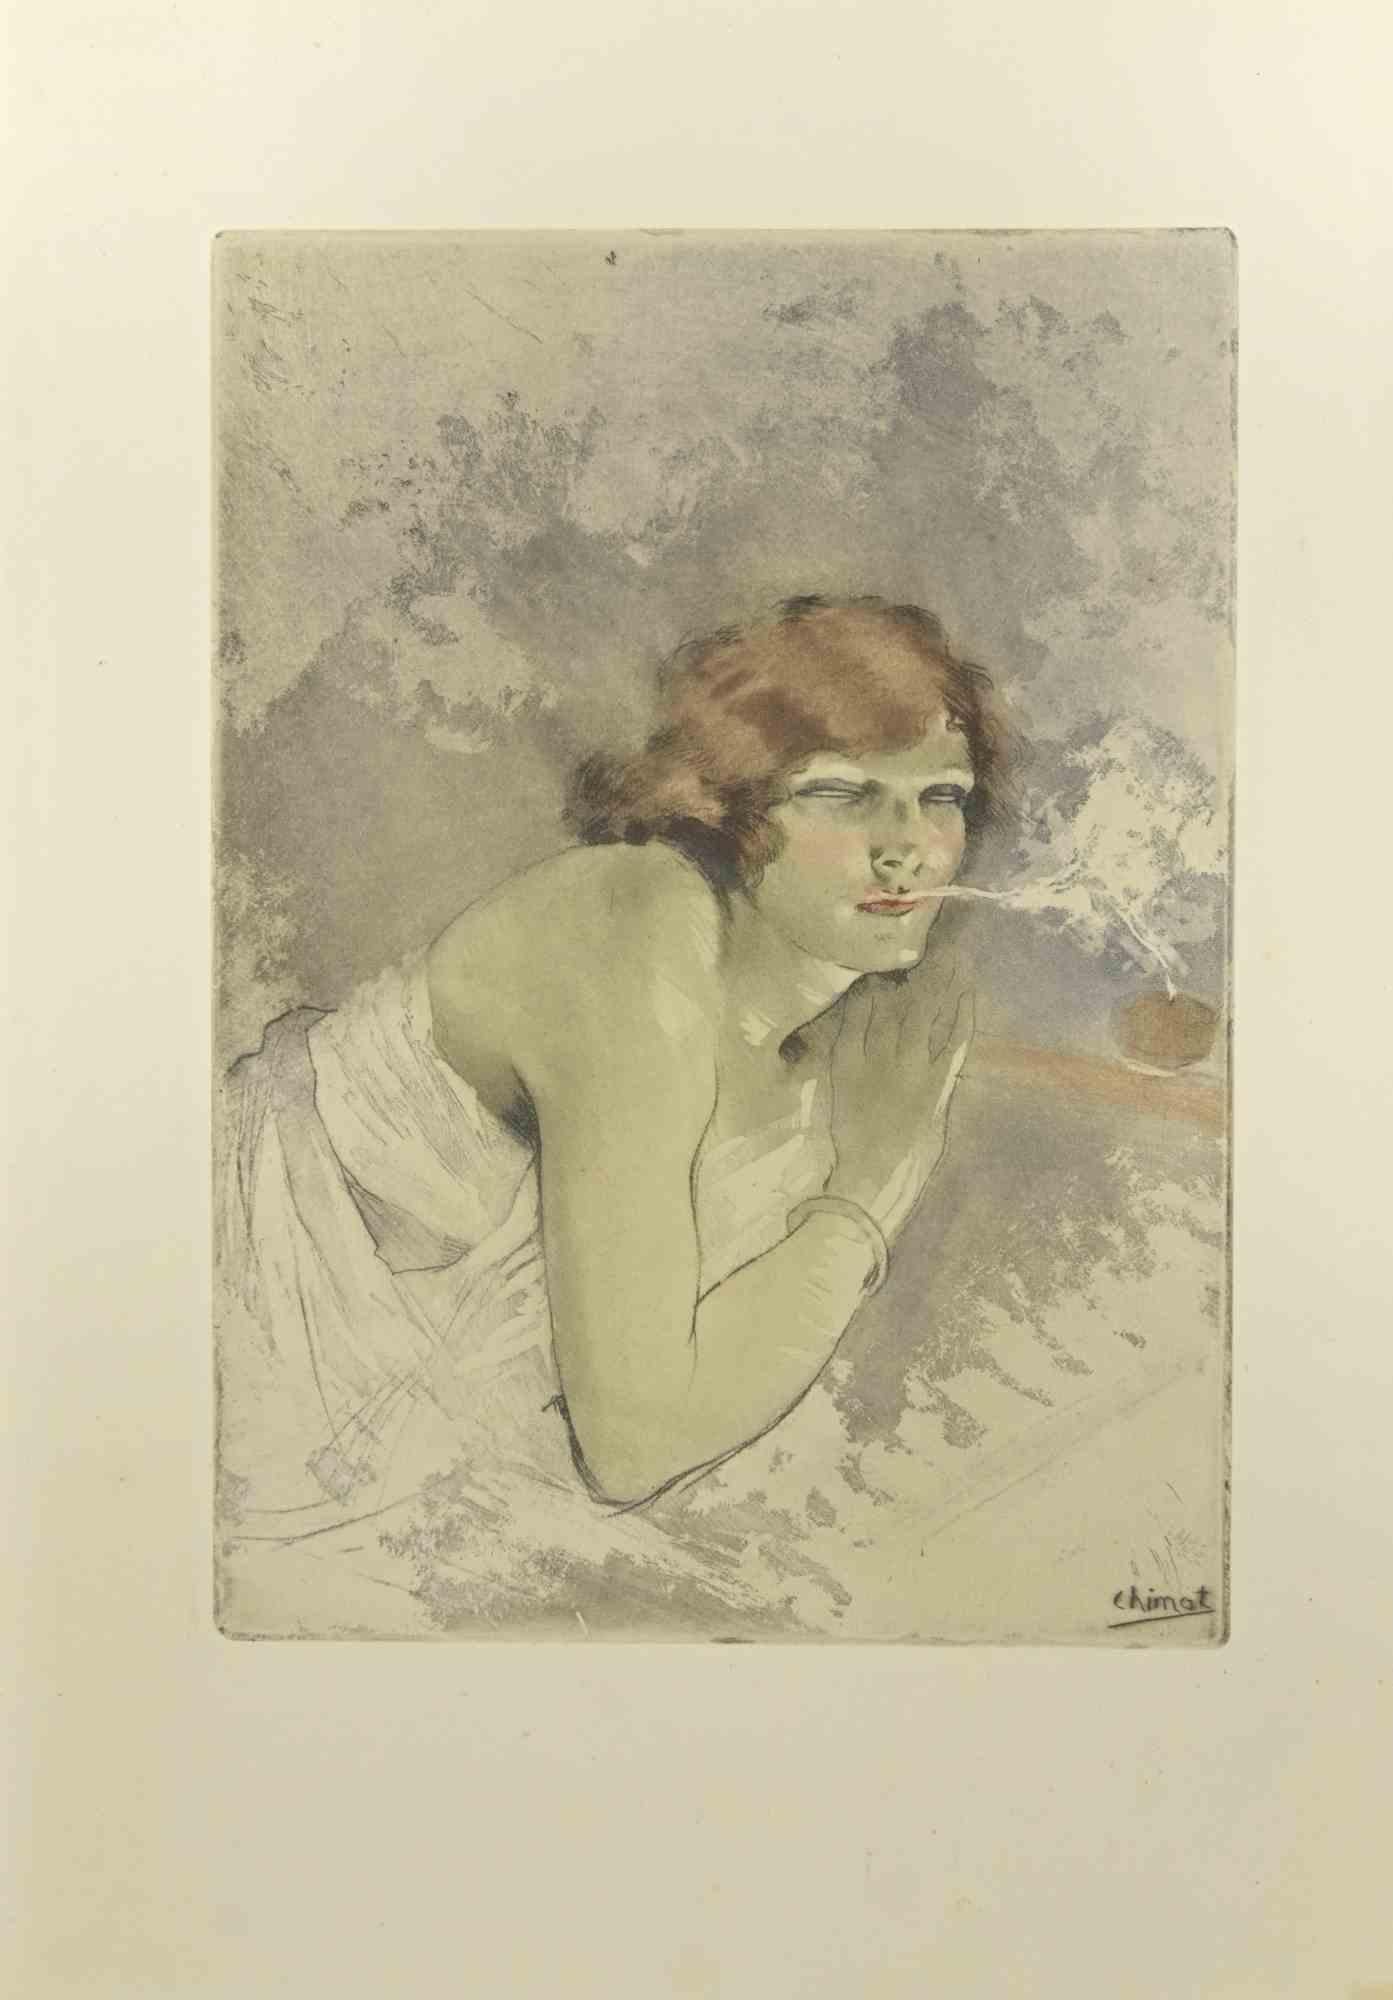 Das rauchende Mädchen ist eine Radierung von Edouard Chimot aus den 1930er Jahren.

Signiert auf der Platte vom Künstler in der rechten unteren Ecke.

Gute Bedingungen.

Édouard Chimot (26. November 1880 - 7. Juni 1959) war ein französischer